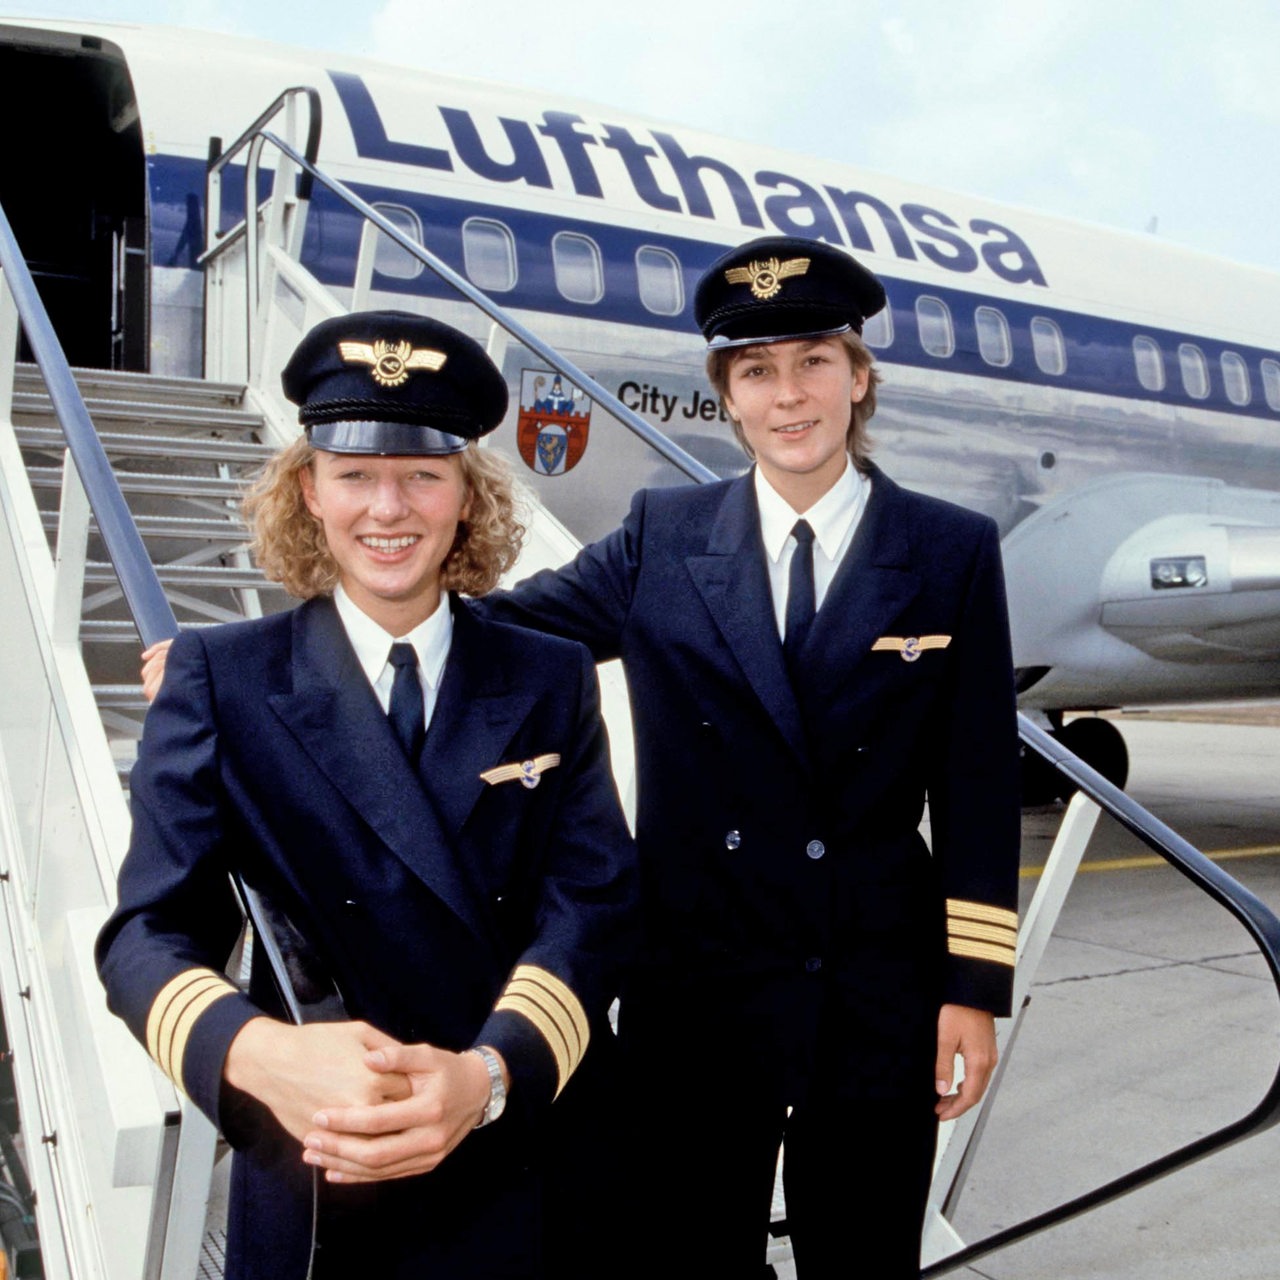 Nicole Lisy und Evi Hetzmannseder vor einer Lufthansamaschine. Sie absolvierten im August 1988 ihre Pilotinnenausbildung.